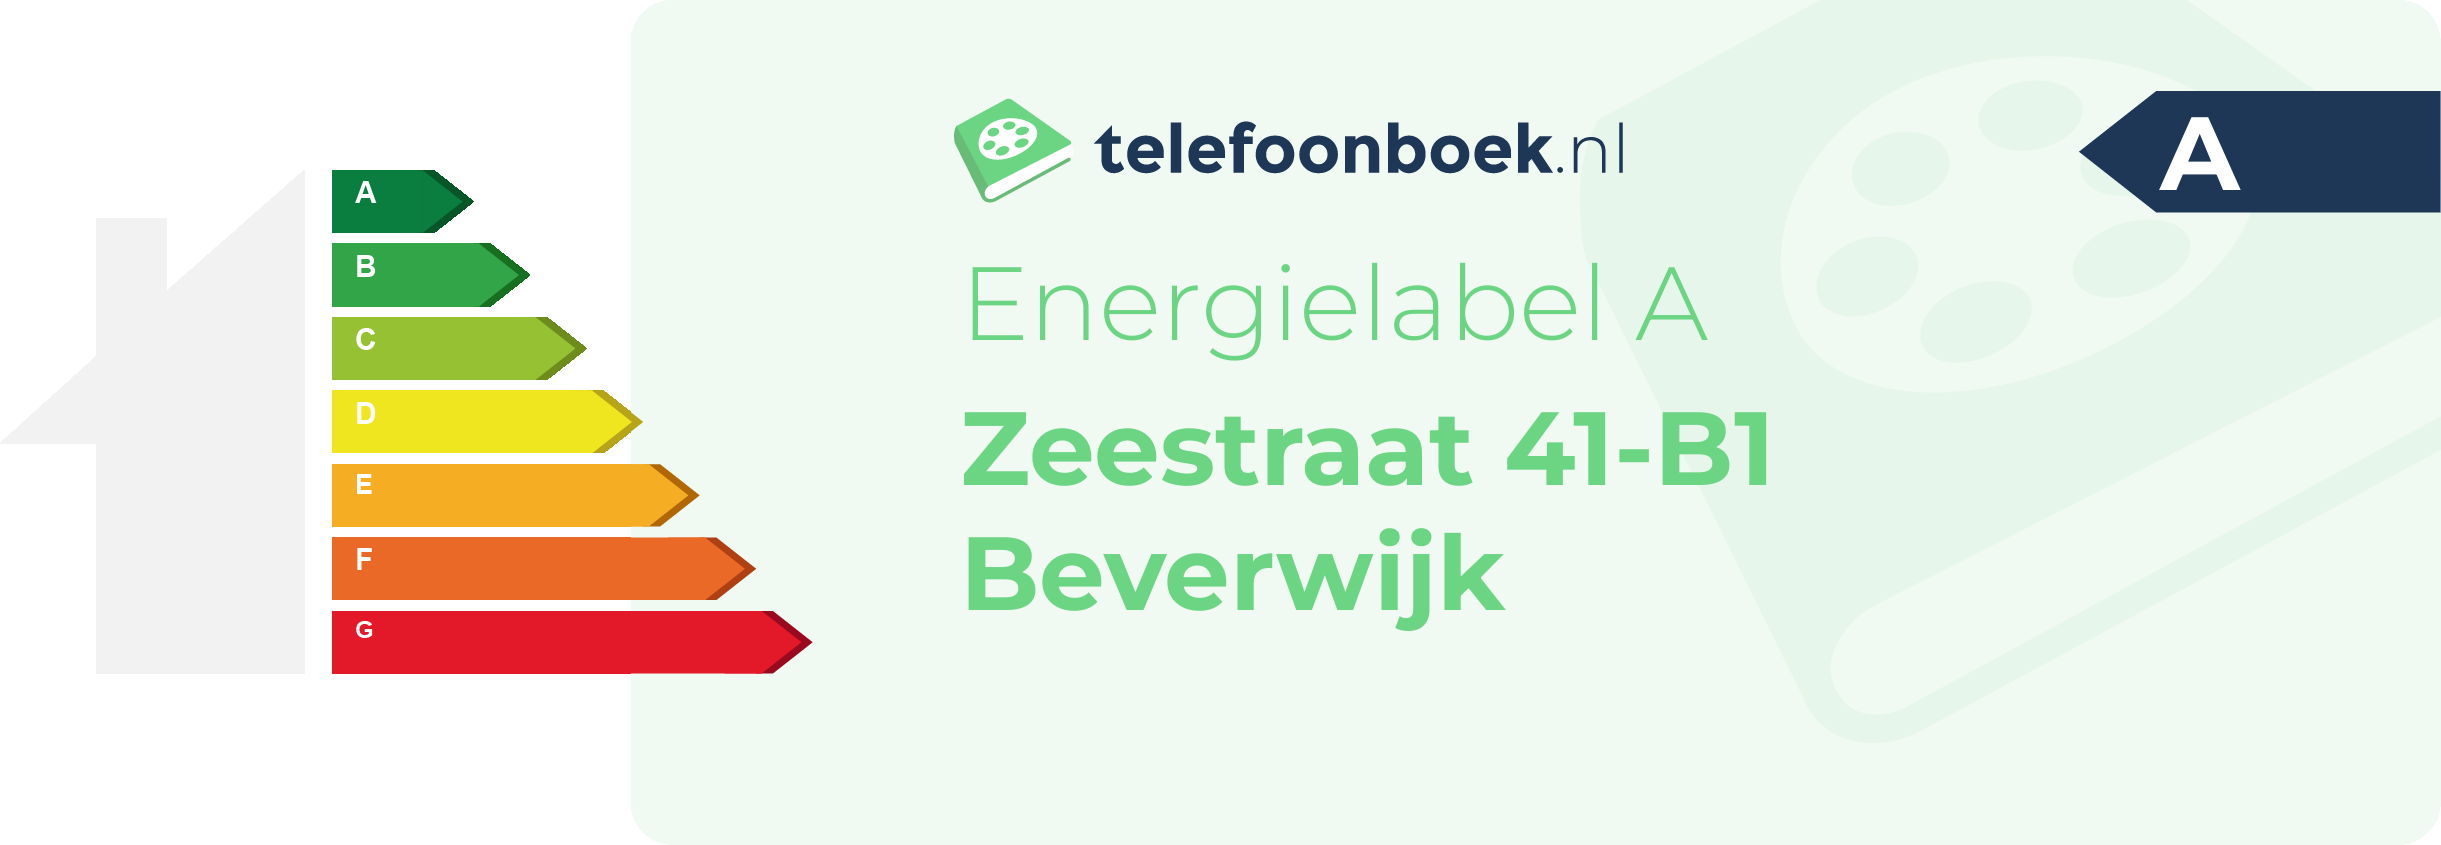 Energielabel Zeestraat 41-B1 Beverwijk